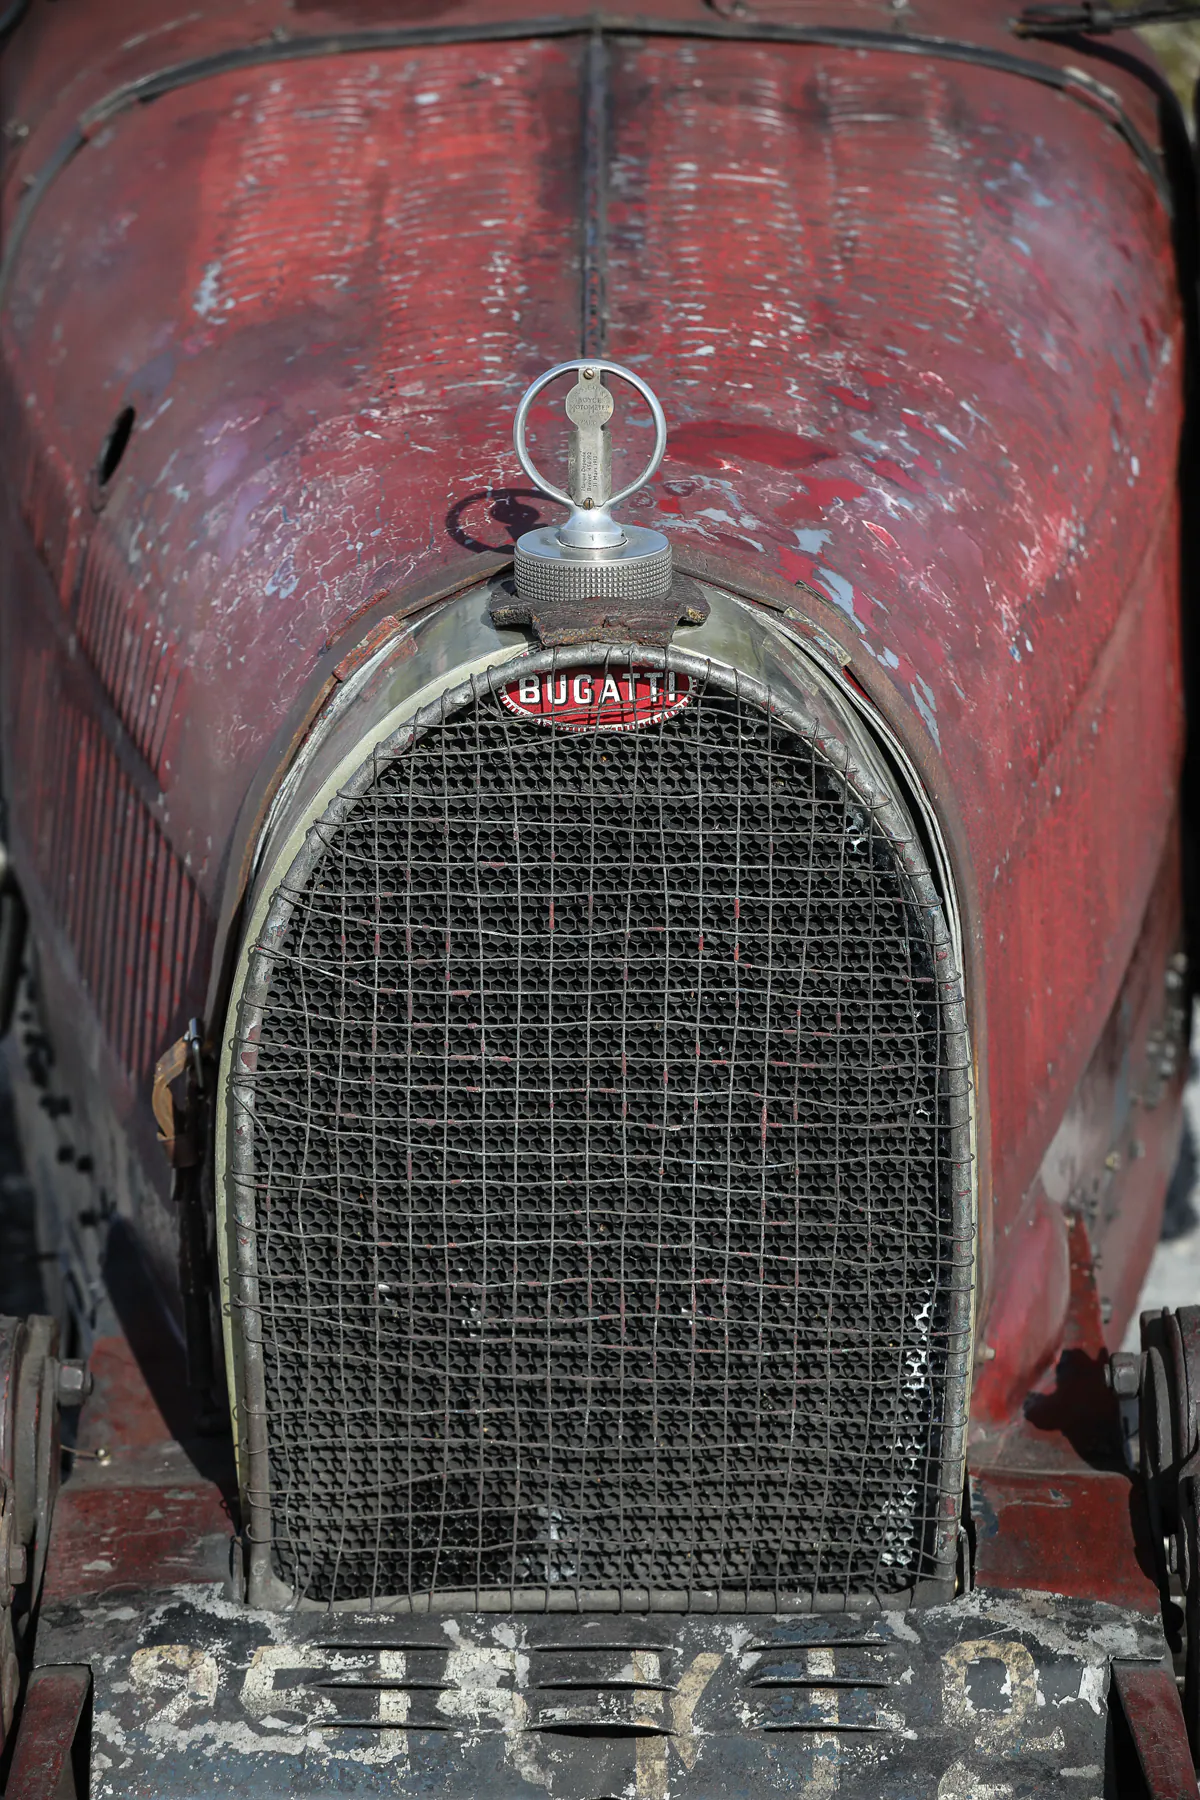 Bugatti Tipo 35C (Chasis 4871). Un Bugatti Type 35C Grand Prix que data de 1928 se vendió por 5,23 millones de dólares en una subasta de Gooding &amp; Company en Londres, un récord para el Type 35. Este coche con el número de chasis 4871 fue construido originalmente para el Targa Florio 1928. El primer propietario privado fue Jannine Jennky, un piloto de carreras francés que lo llevó a la victoria general en la primera Coupe de Bourgogne en Dijon. Ahora con más de 90 años, el vehículo solo tuvo cuatro propietarios después de 1932. Permanece en su estado original, sin restaurar. Hasta 1930, Bugatti produjo el Tipo 35C con un motor de 8 cilindros en línea y una capacidad de dos litros. Con la ayuda de un sobrealimentador tipo Roots, la unidad de potencia ofrece una potencia de 125 CV, lo que permite una velocidad máxima de más de 200 km / h hace más de 90 años.